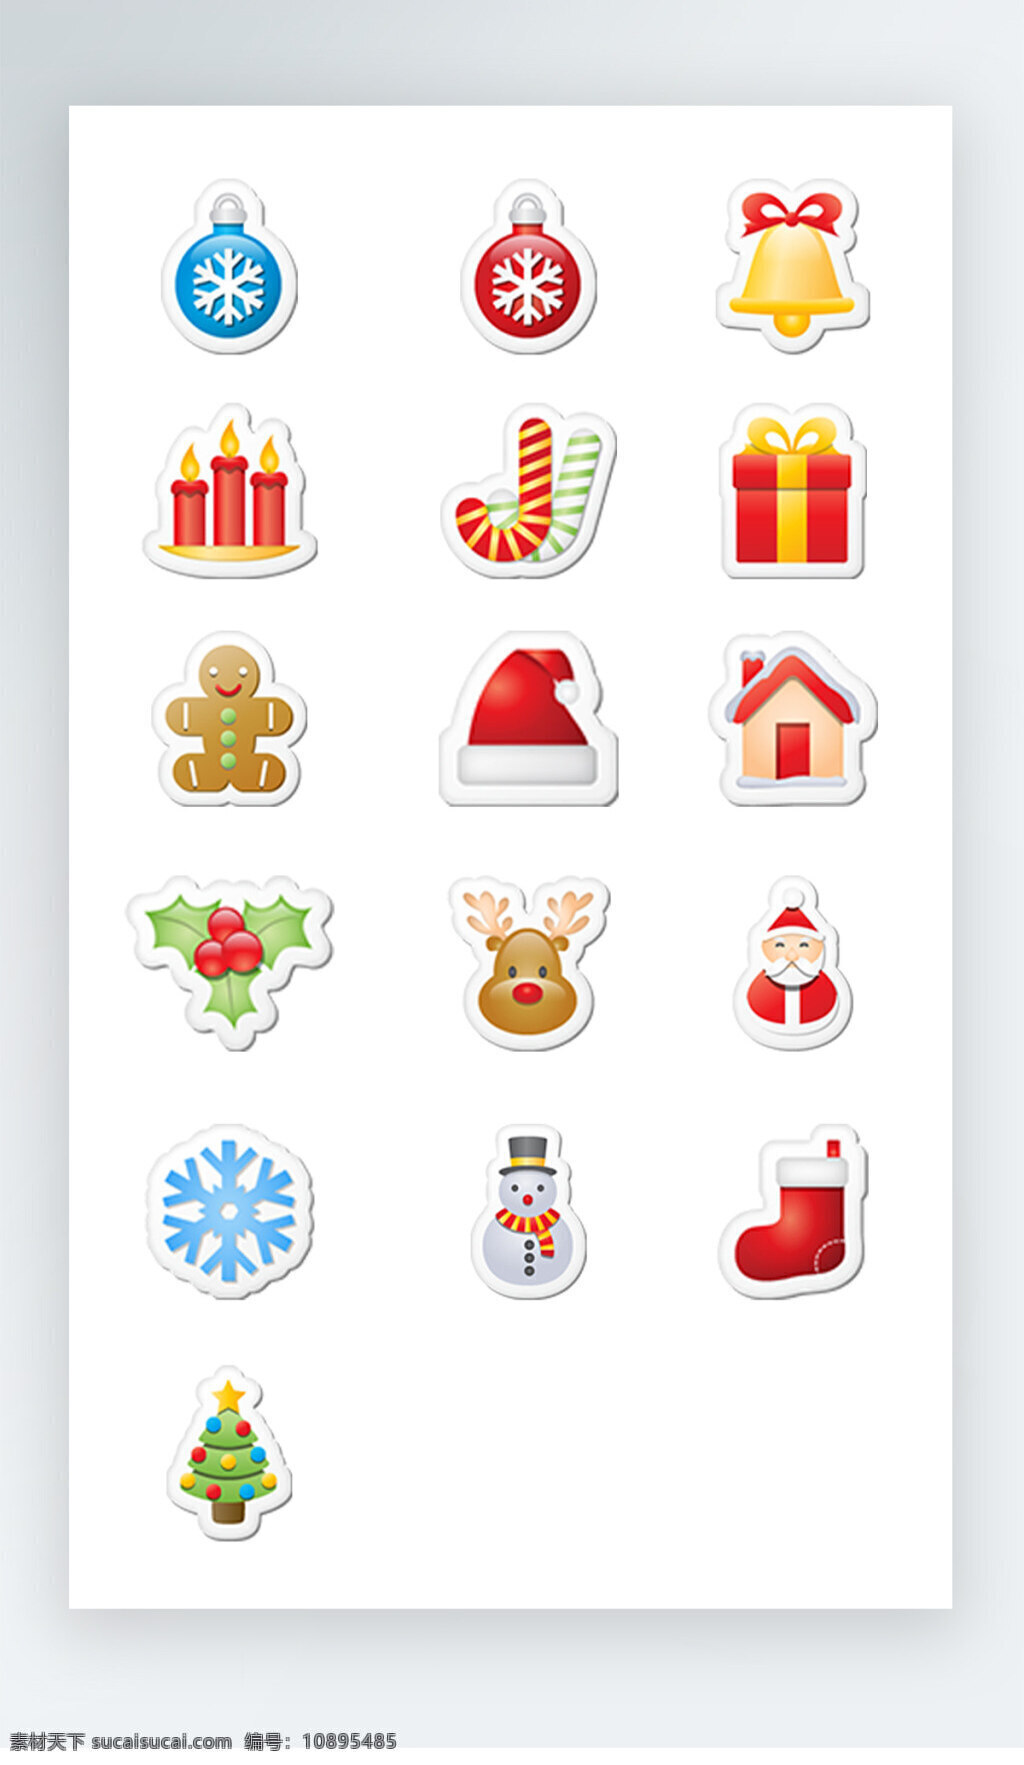 圣诞 图标 彩色 写实 pngicon 圣诞图标 彩色写实图标 icon 鞋图标